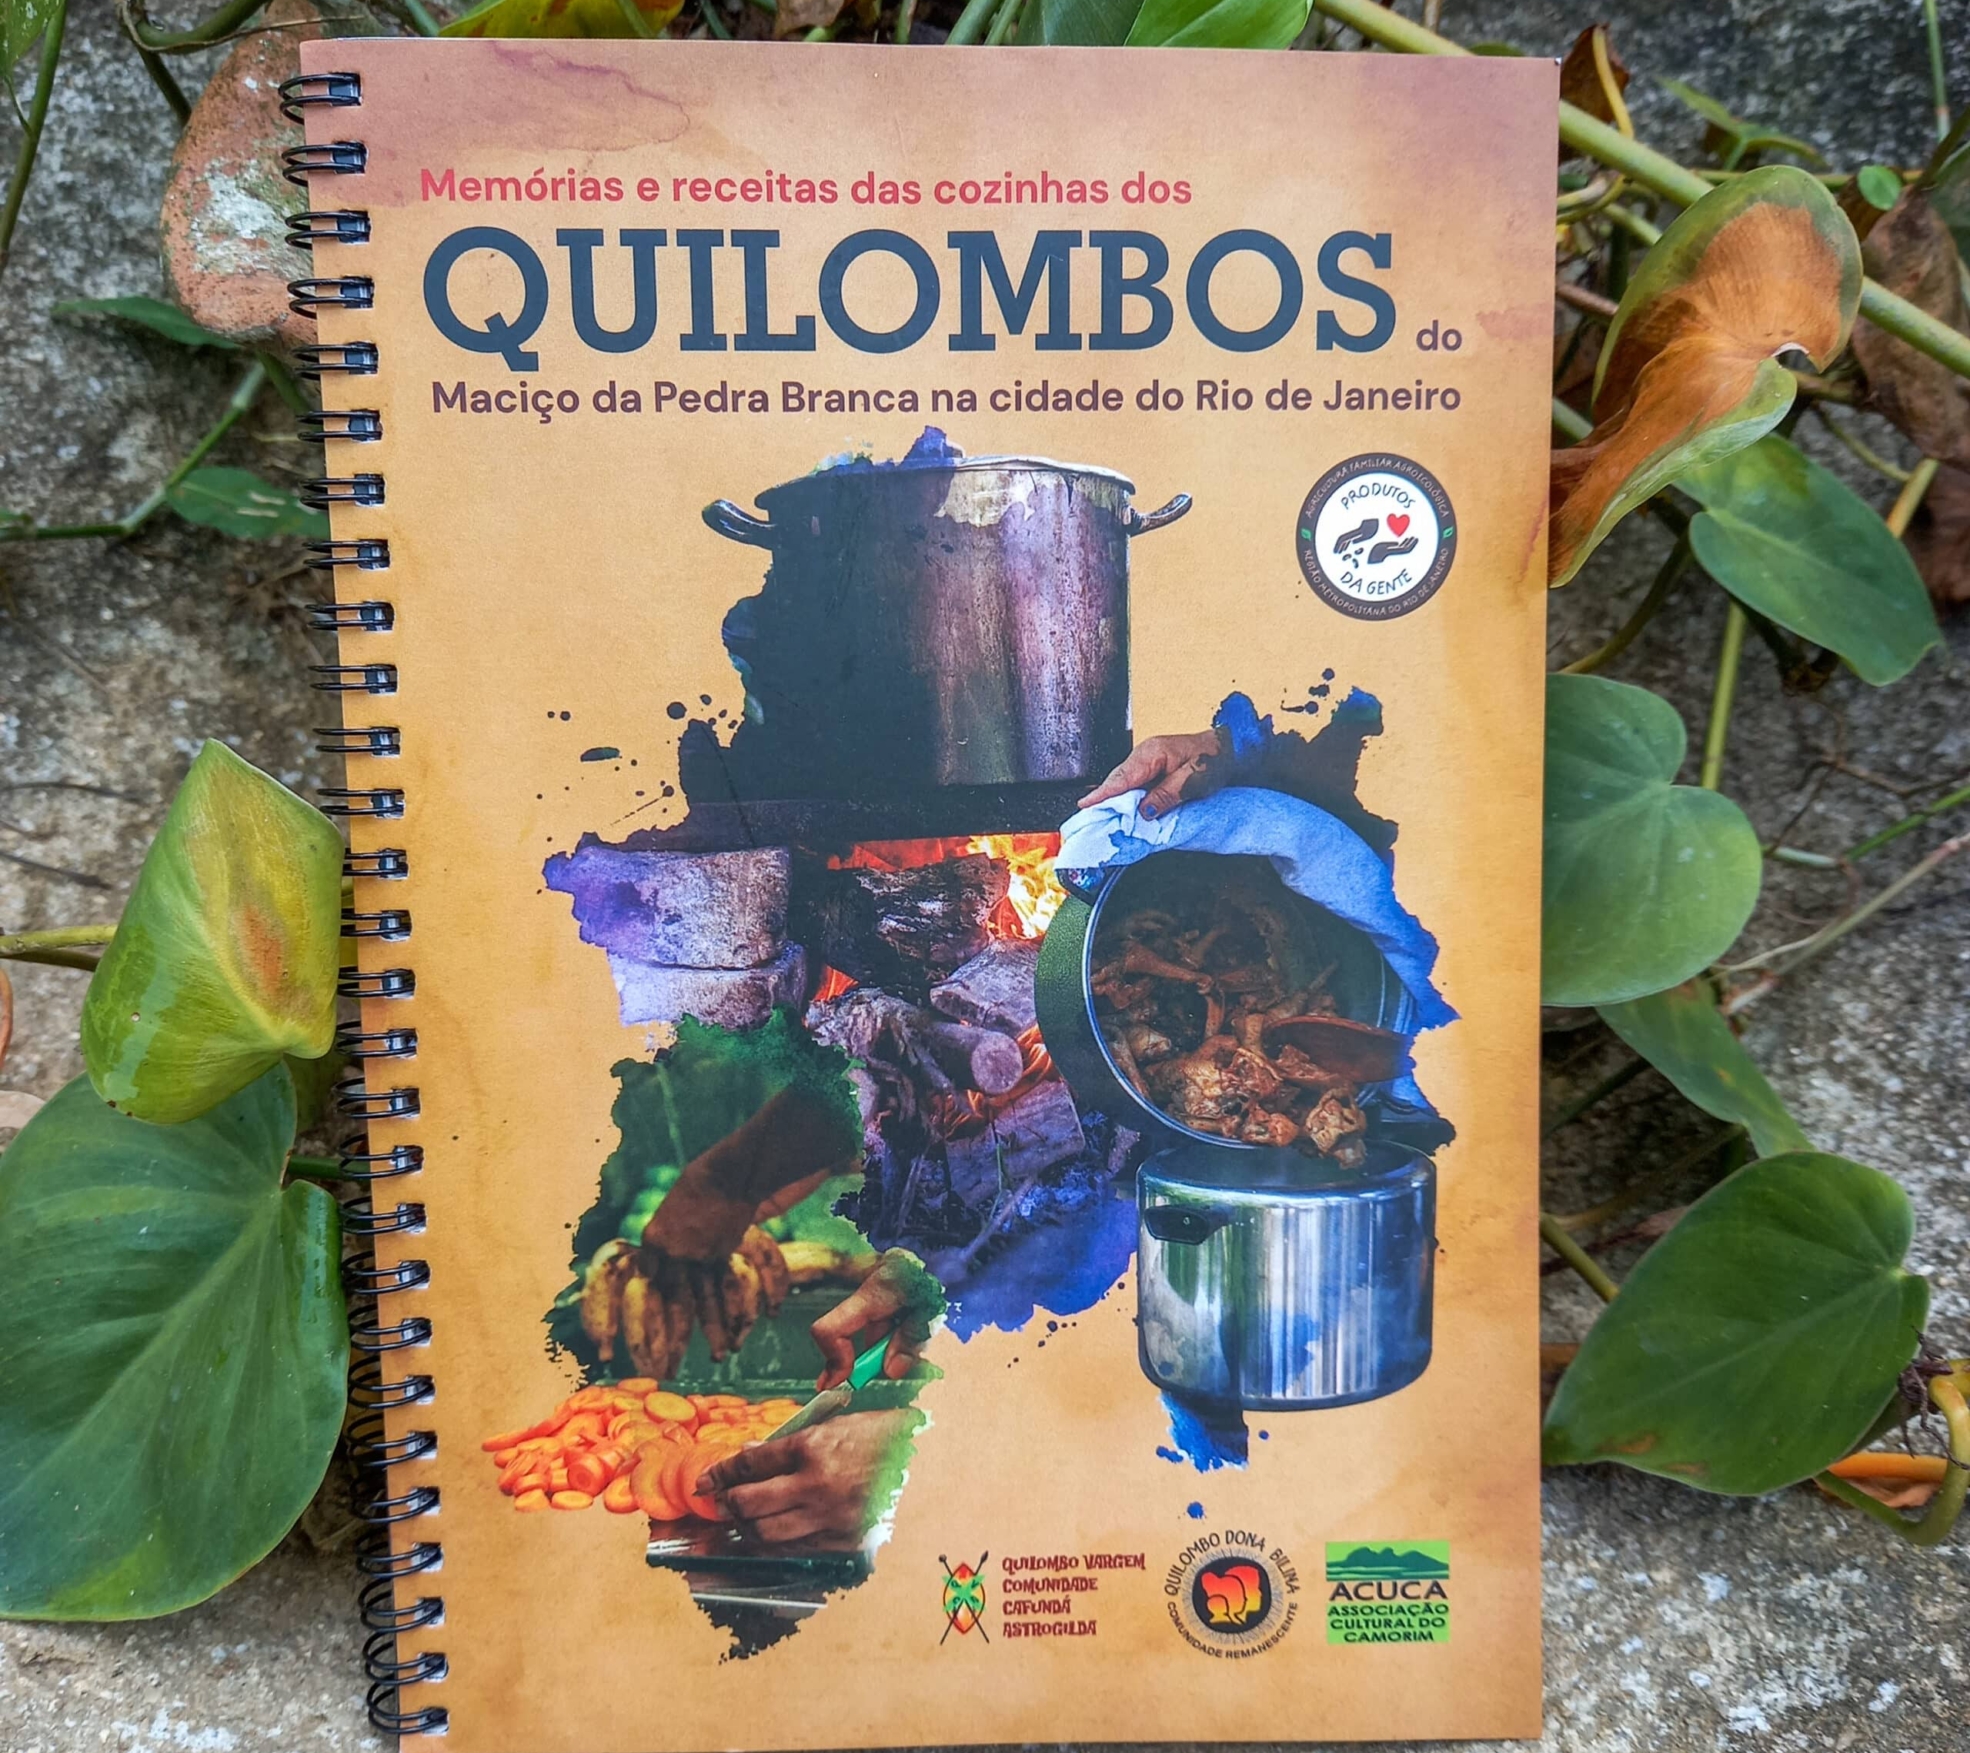 Memórias e receitas das cozinhas dos Quilombos do Maciço da Pedra Branca - Rio de janeiro